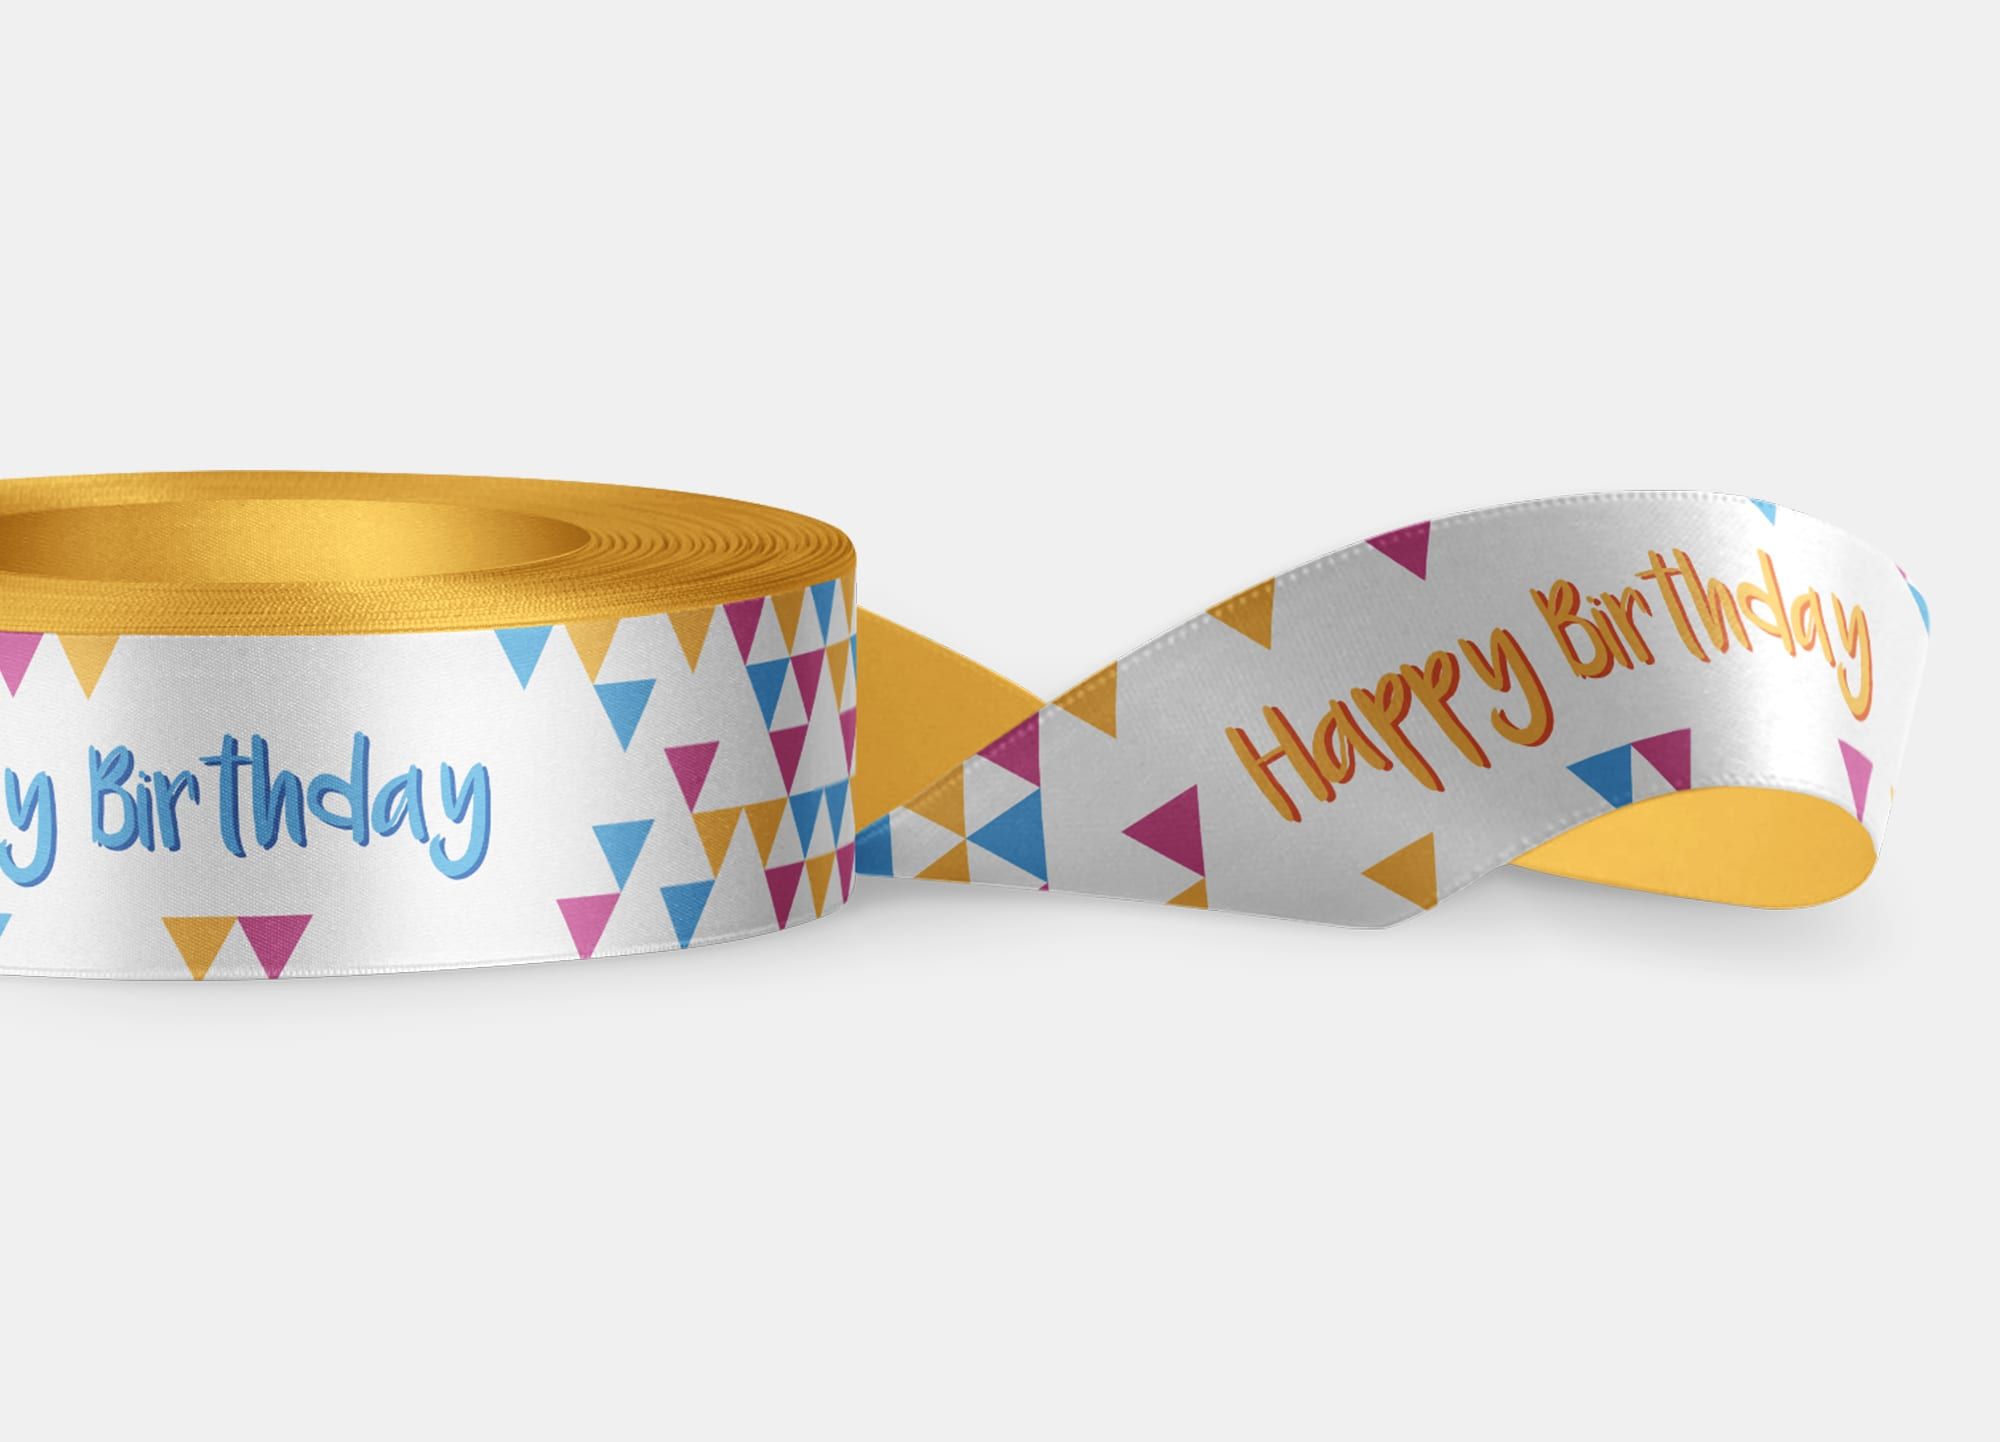 Ideale per regalare un sorriso a chi festeggia il suo compleanno